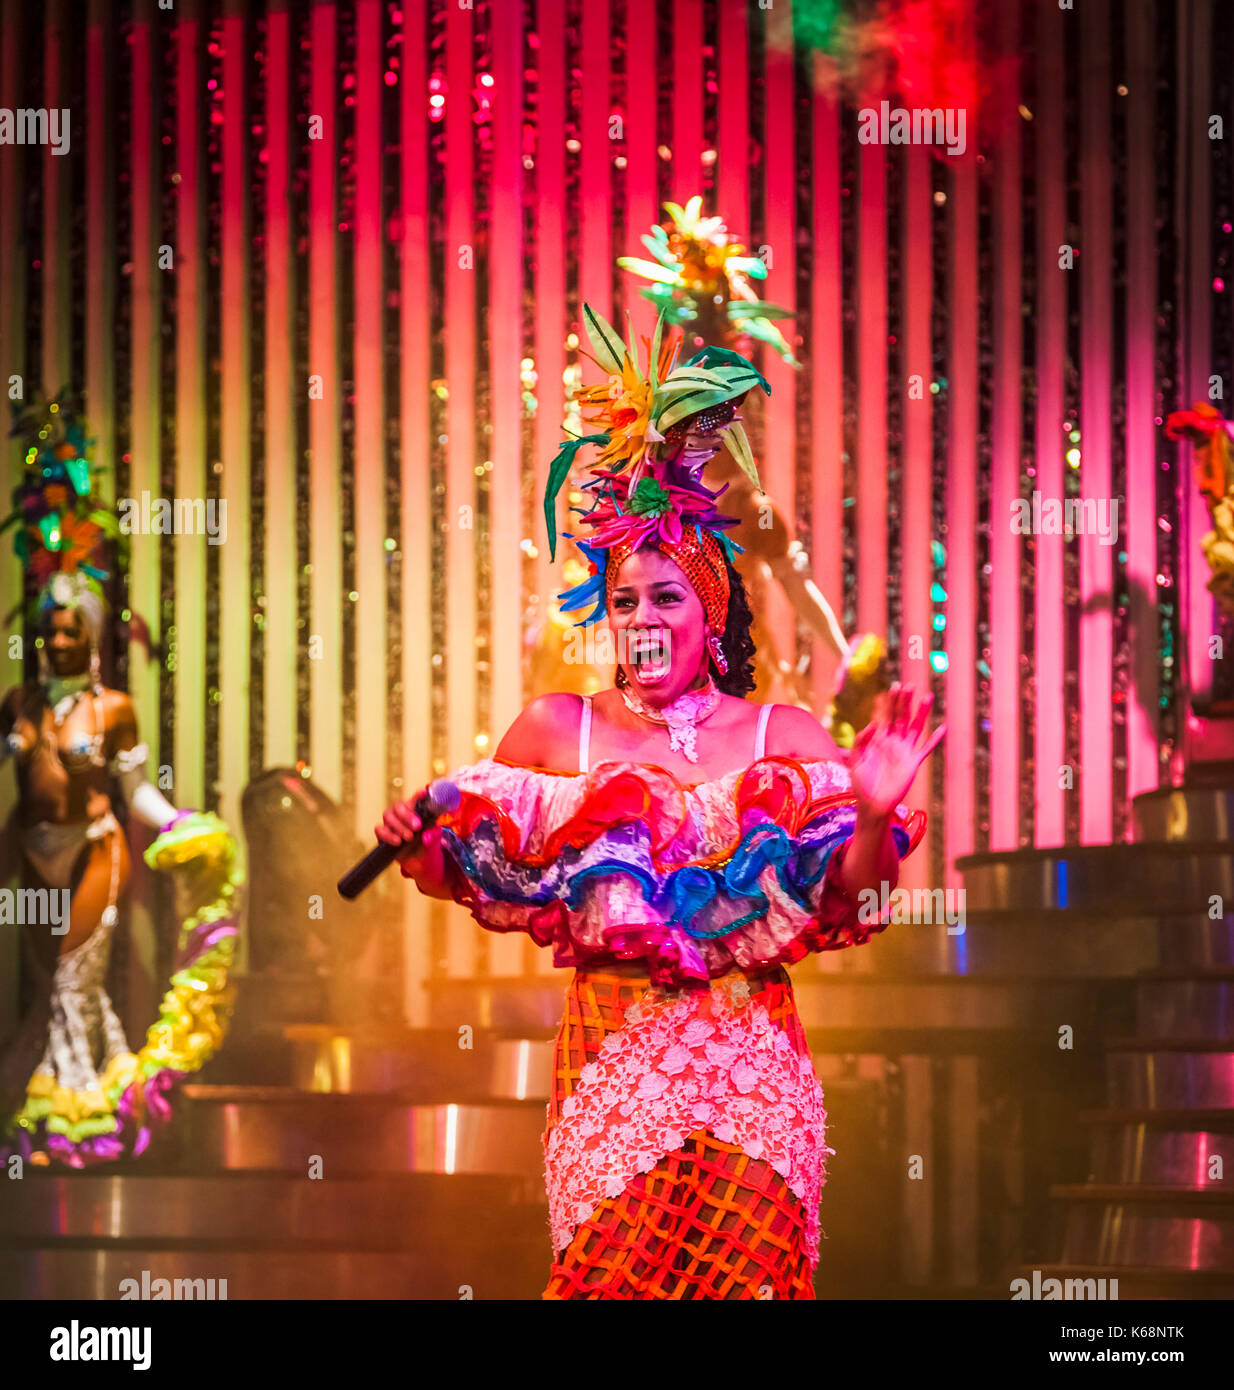 Esuberante cantante e danzatrice esotica di eseguire dal vivo sul palco in abiti colorati in uno spettacolo di cabaret per i turisti in una discoteca di Avana, Cuba Foto Stock